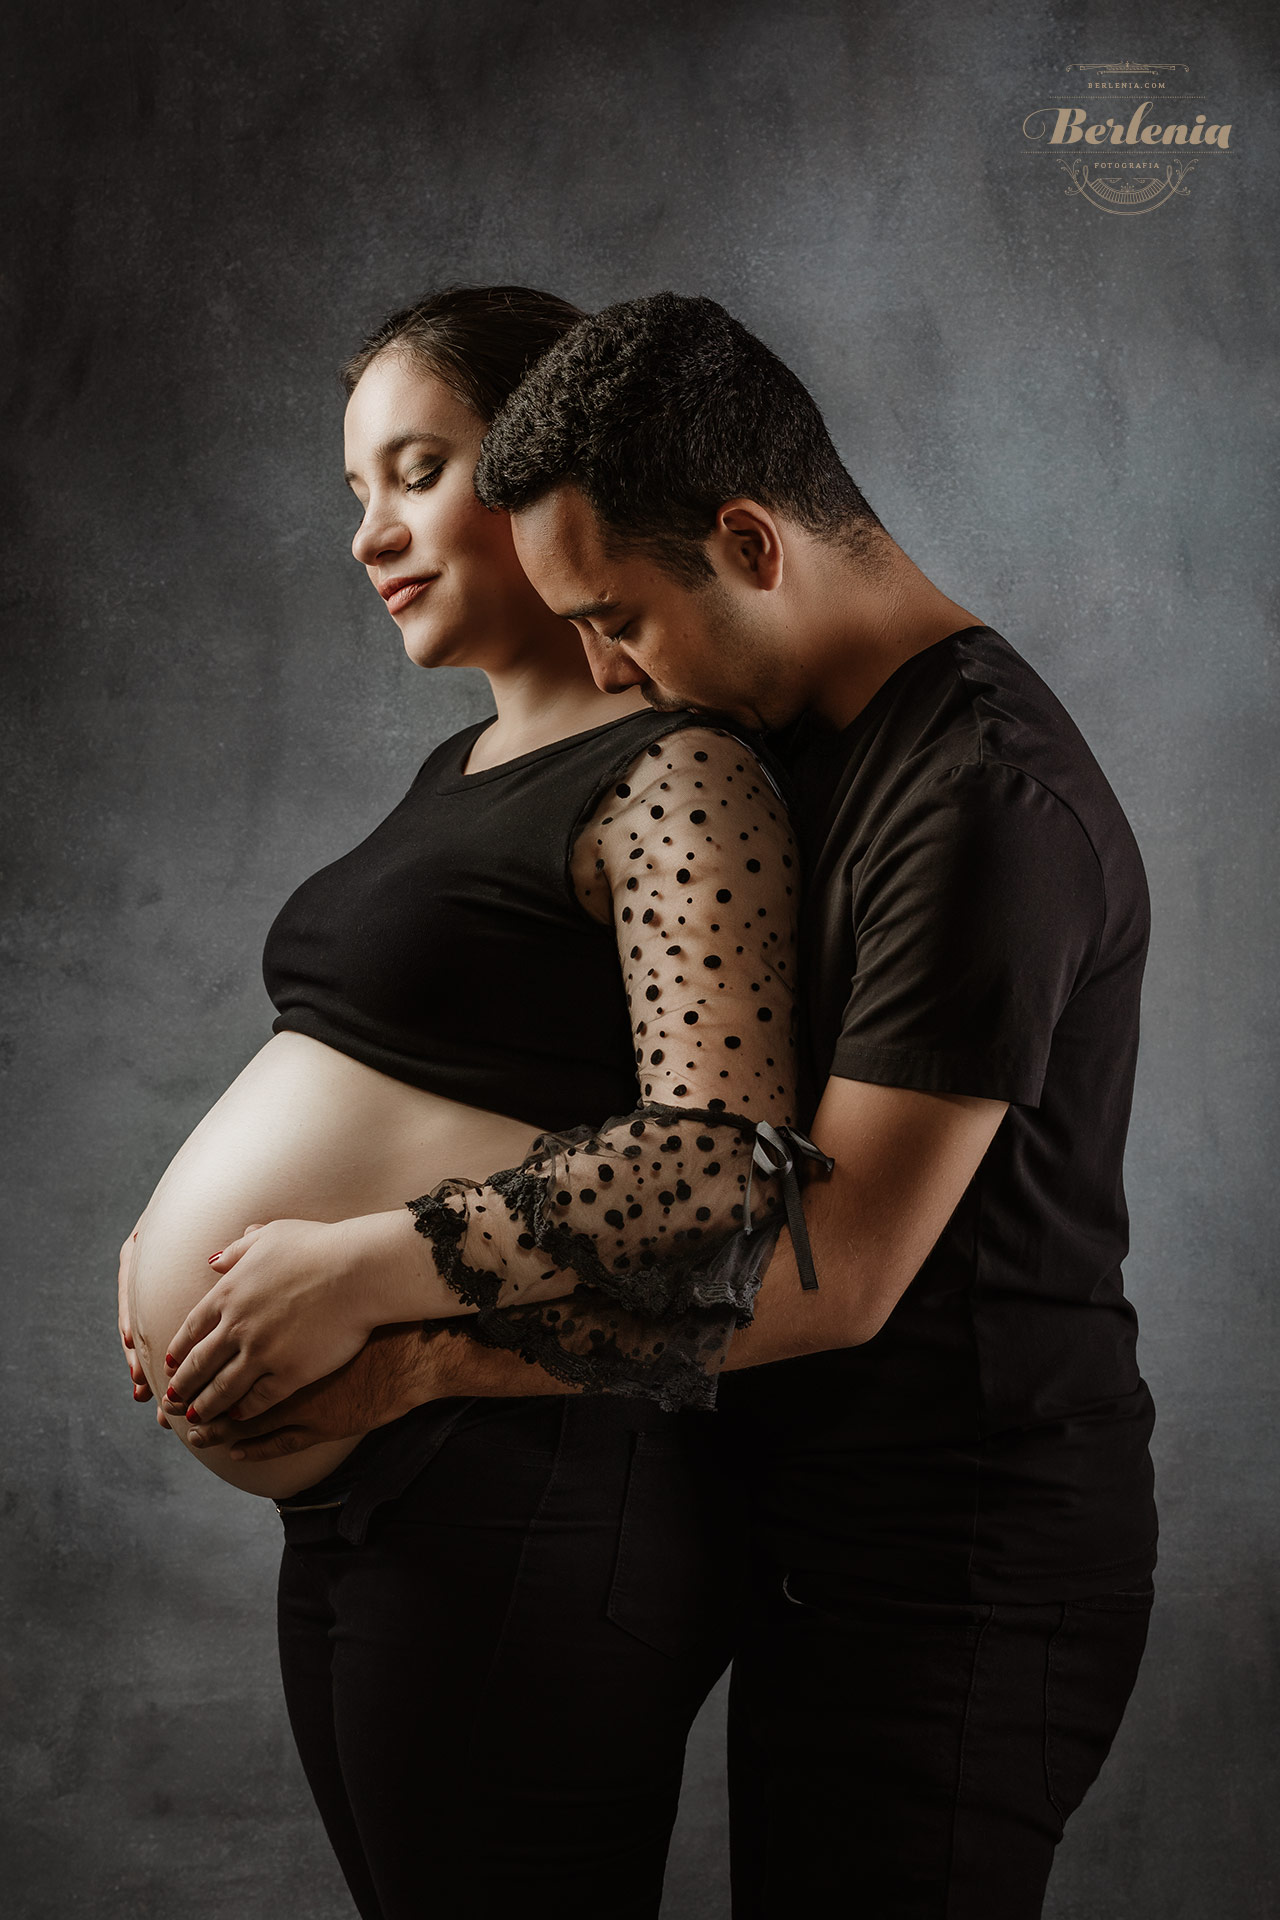 Fotografía de embarazo en estudio con pareja - Sesión de fotos embarazada - Villa Urquiza, CABA, Buenos Aires, Argentina - Berlenia Fotografía - 11